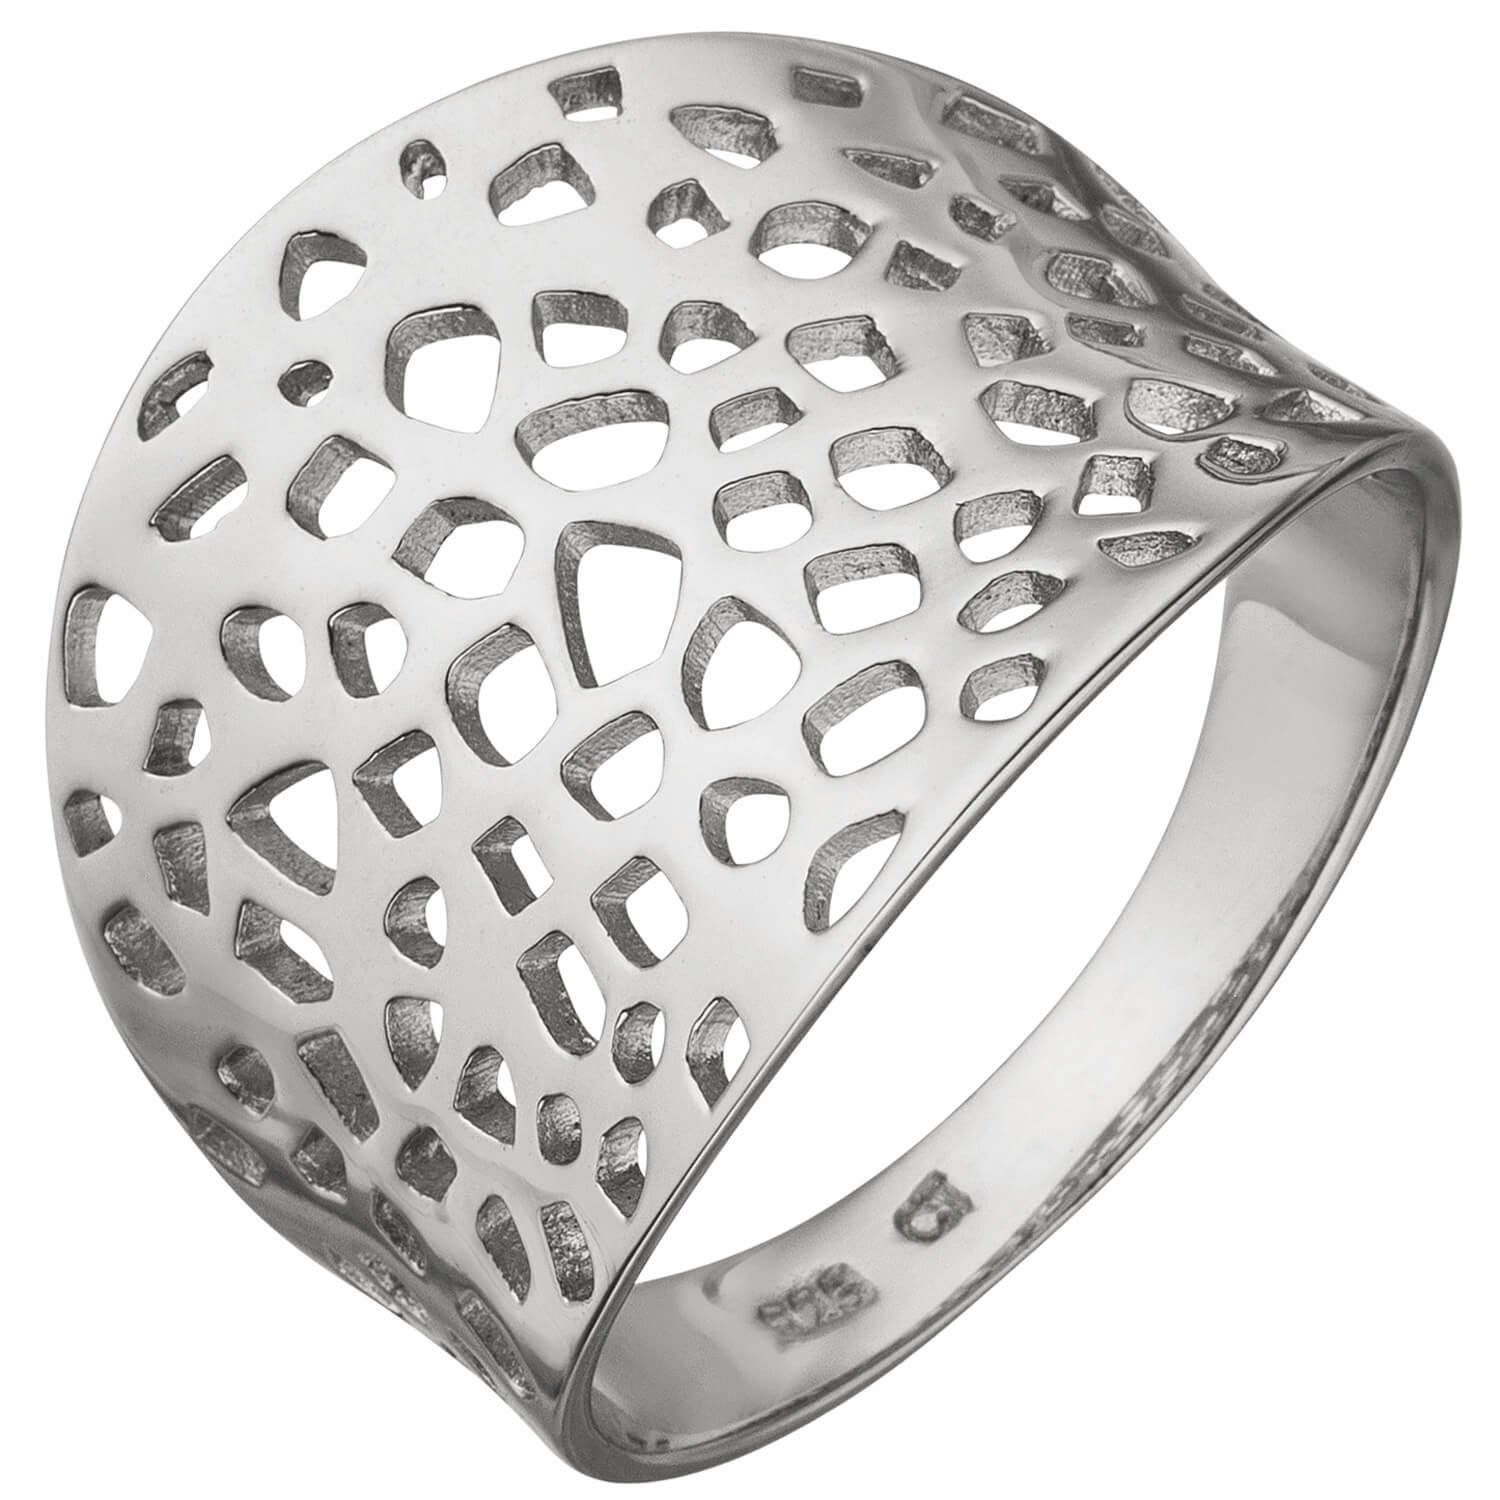 Schmuck Krone Silberring 17,5mm breiter Ring aus 925 Silber, Silber 925